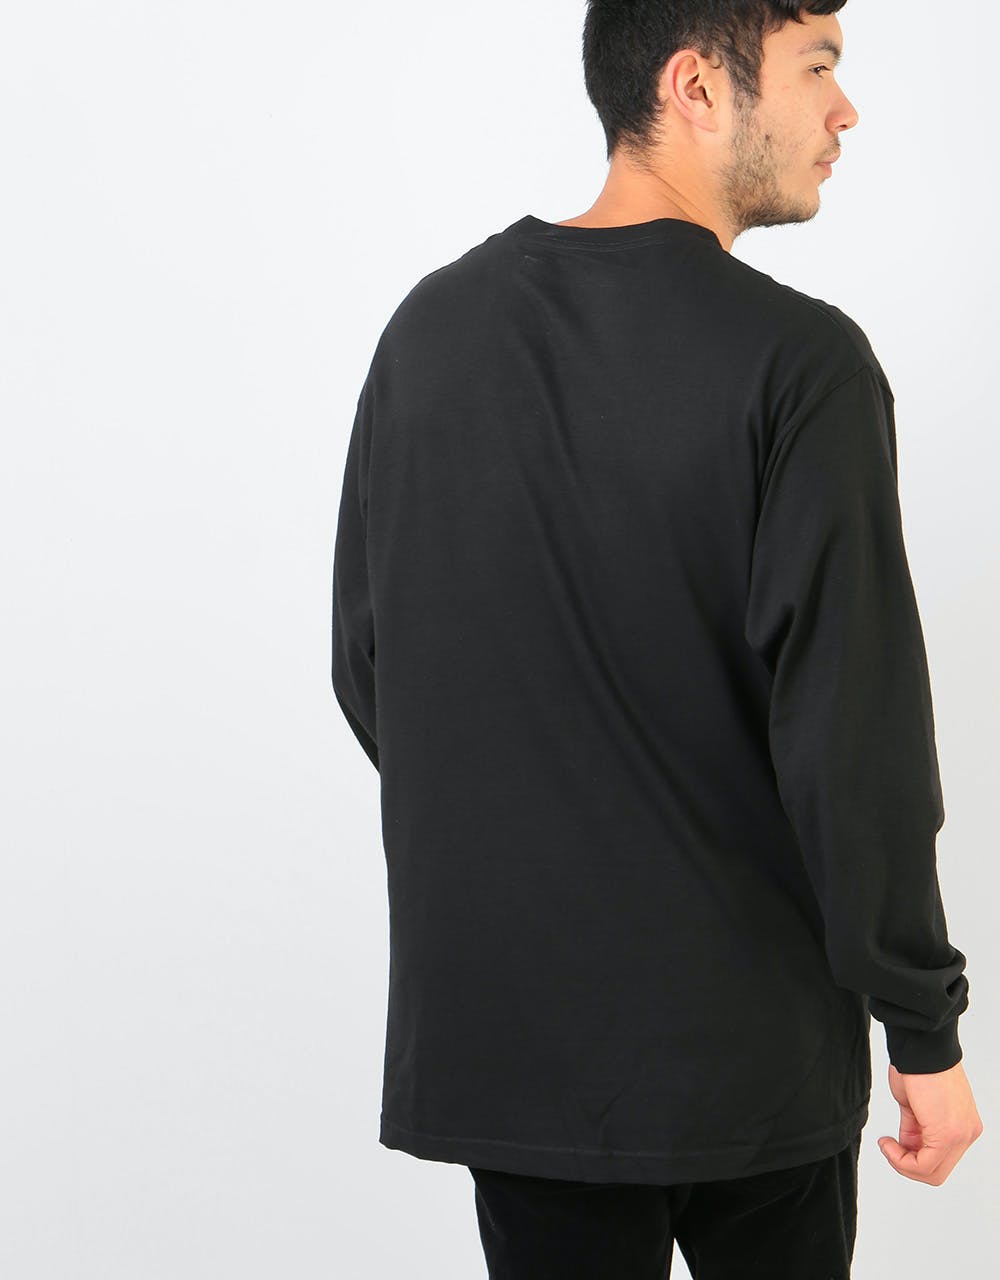 Chocolate Mindblown L/S T-Shirt - Black